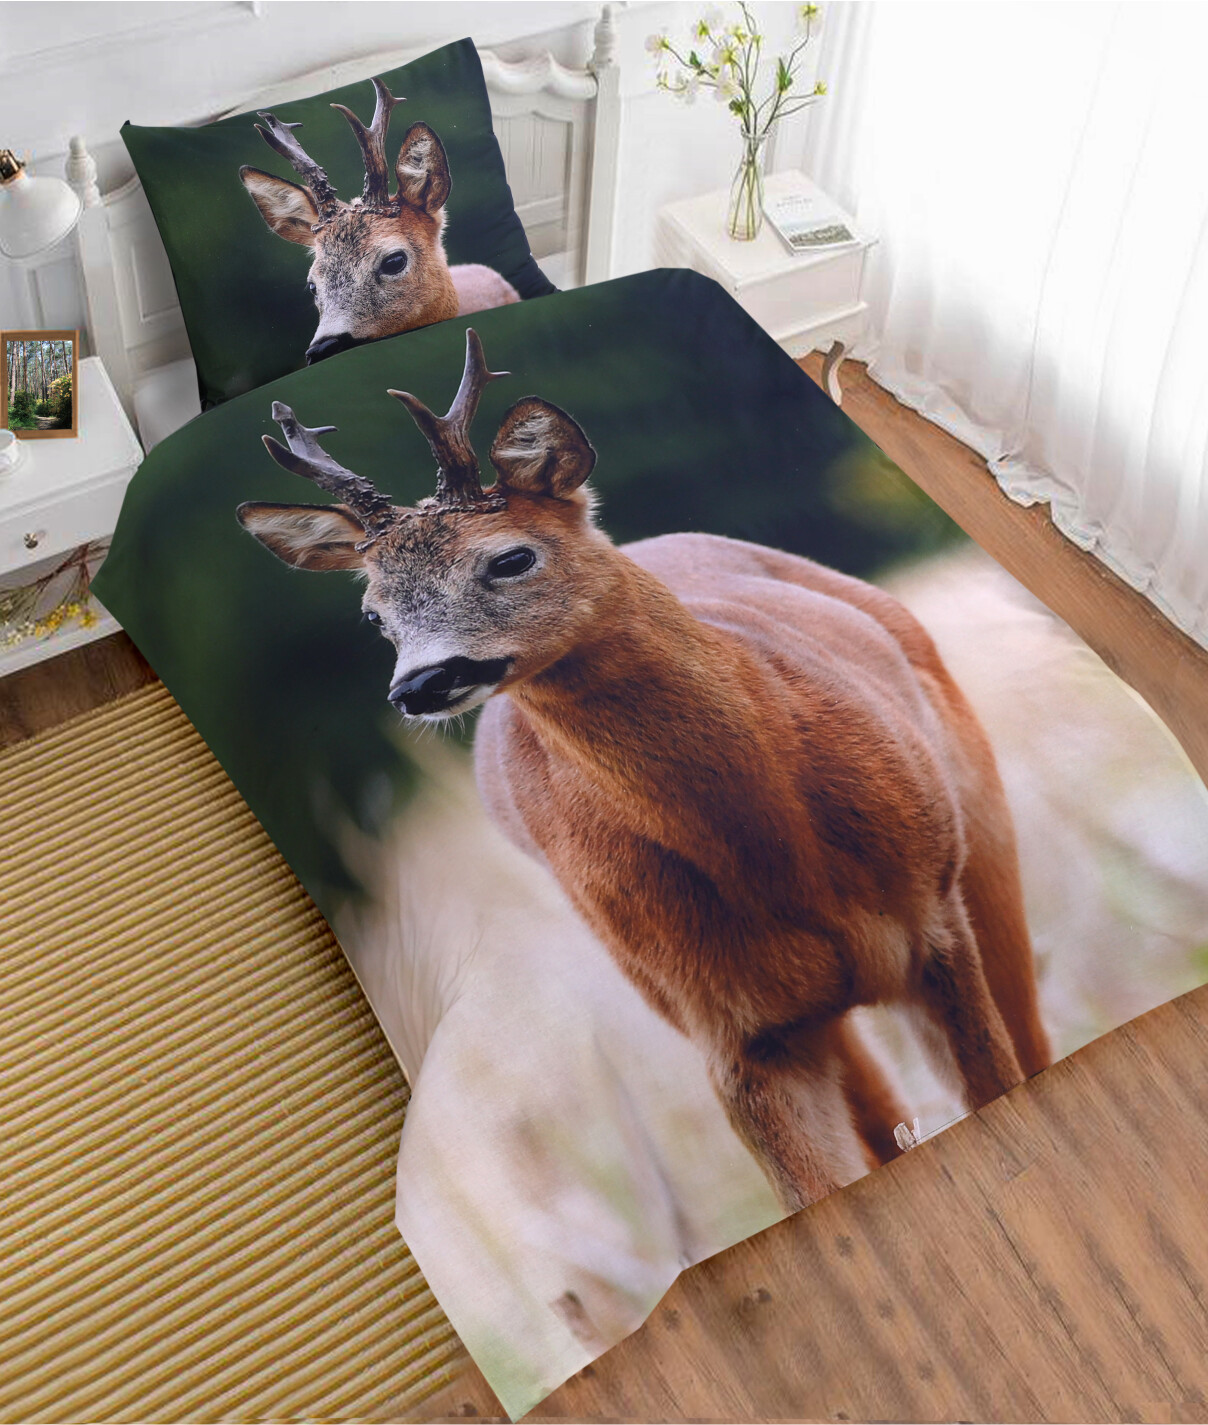 - Køb det fedeste sengetøj med jagt og natur print